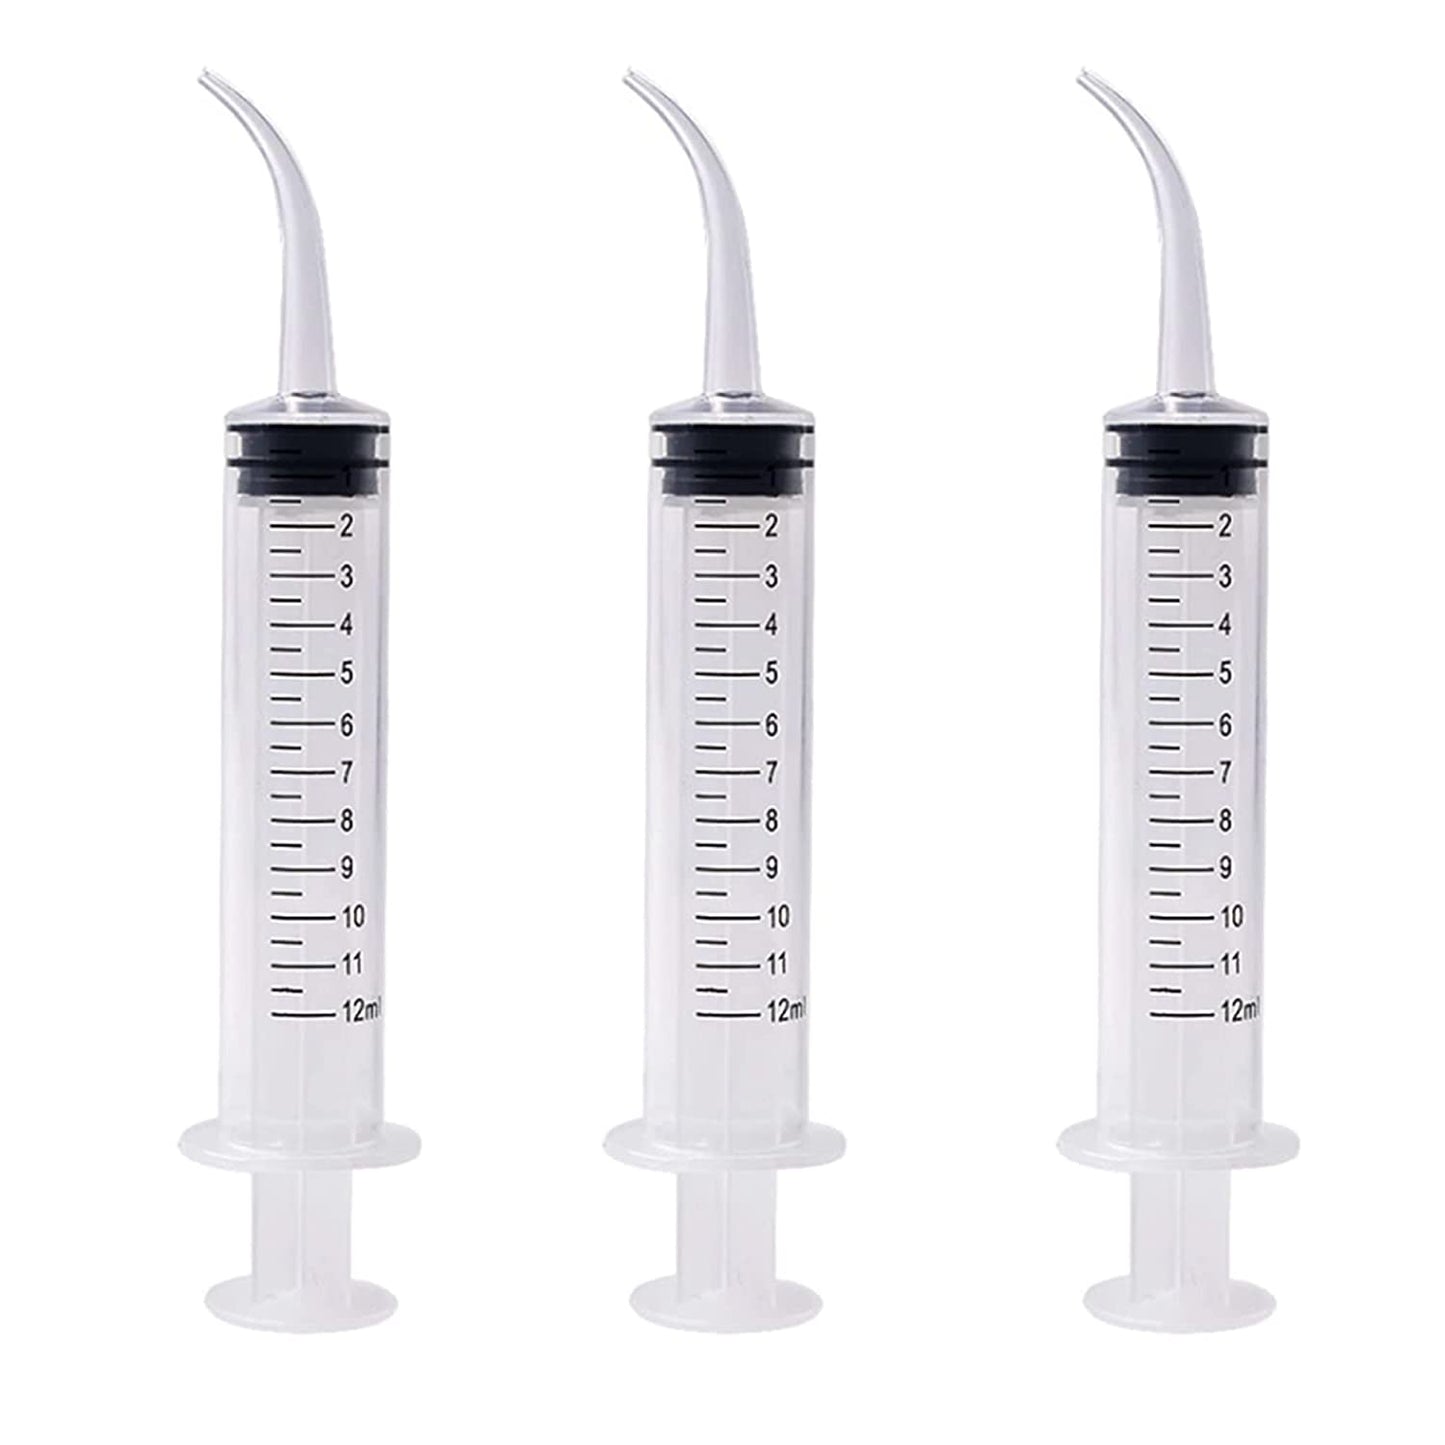 Curved Tip 12cc Irrigation Syringes, Dental Syringe with Curved Tip for Oral Dental Care